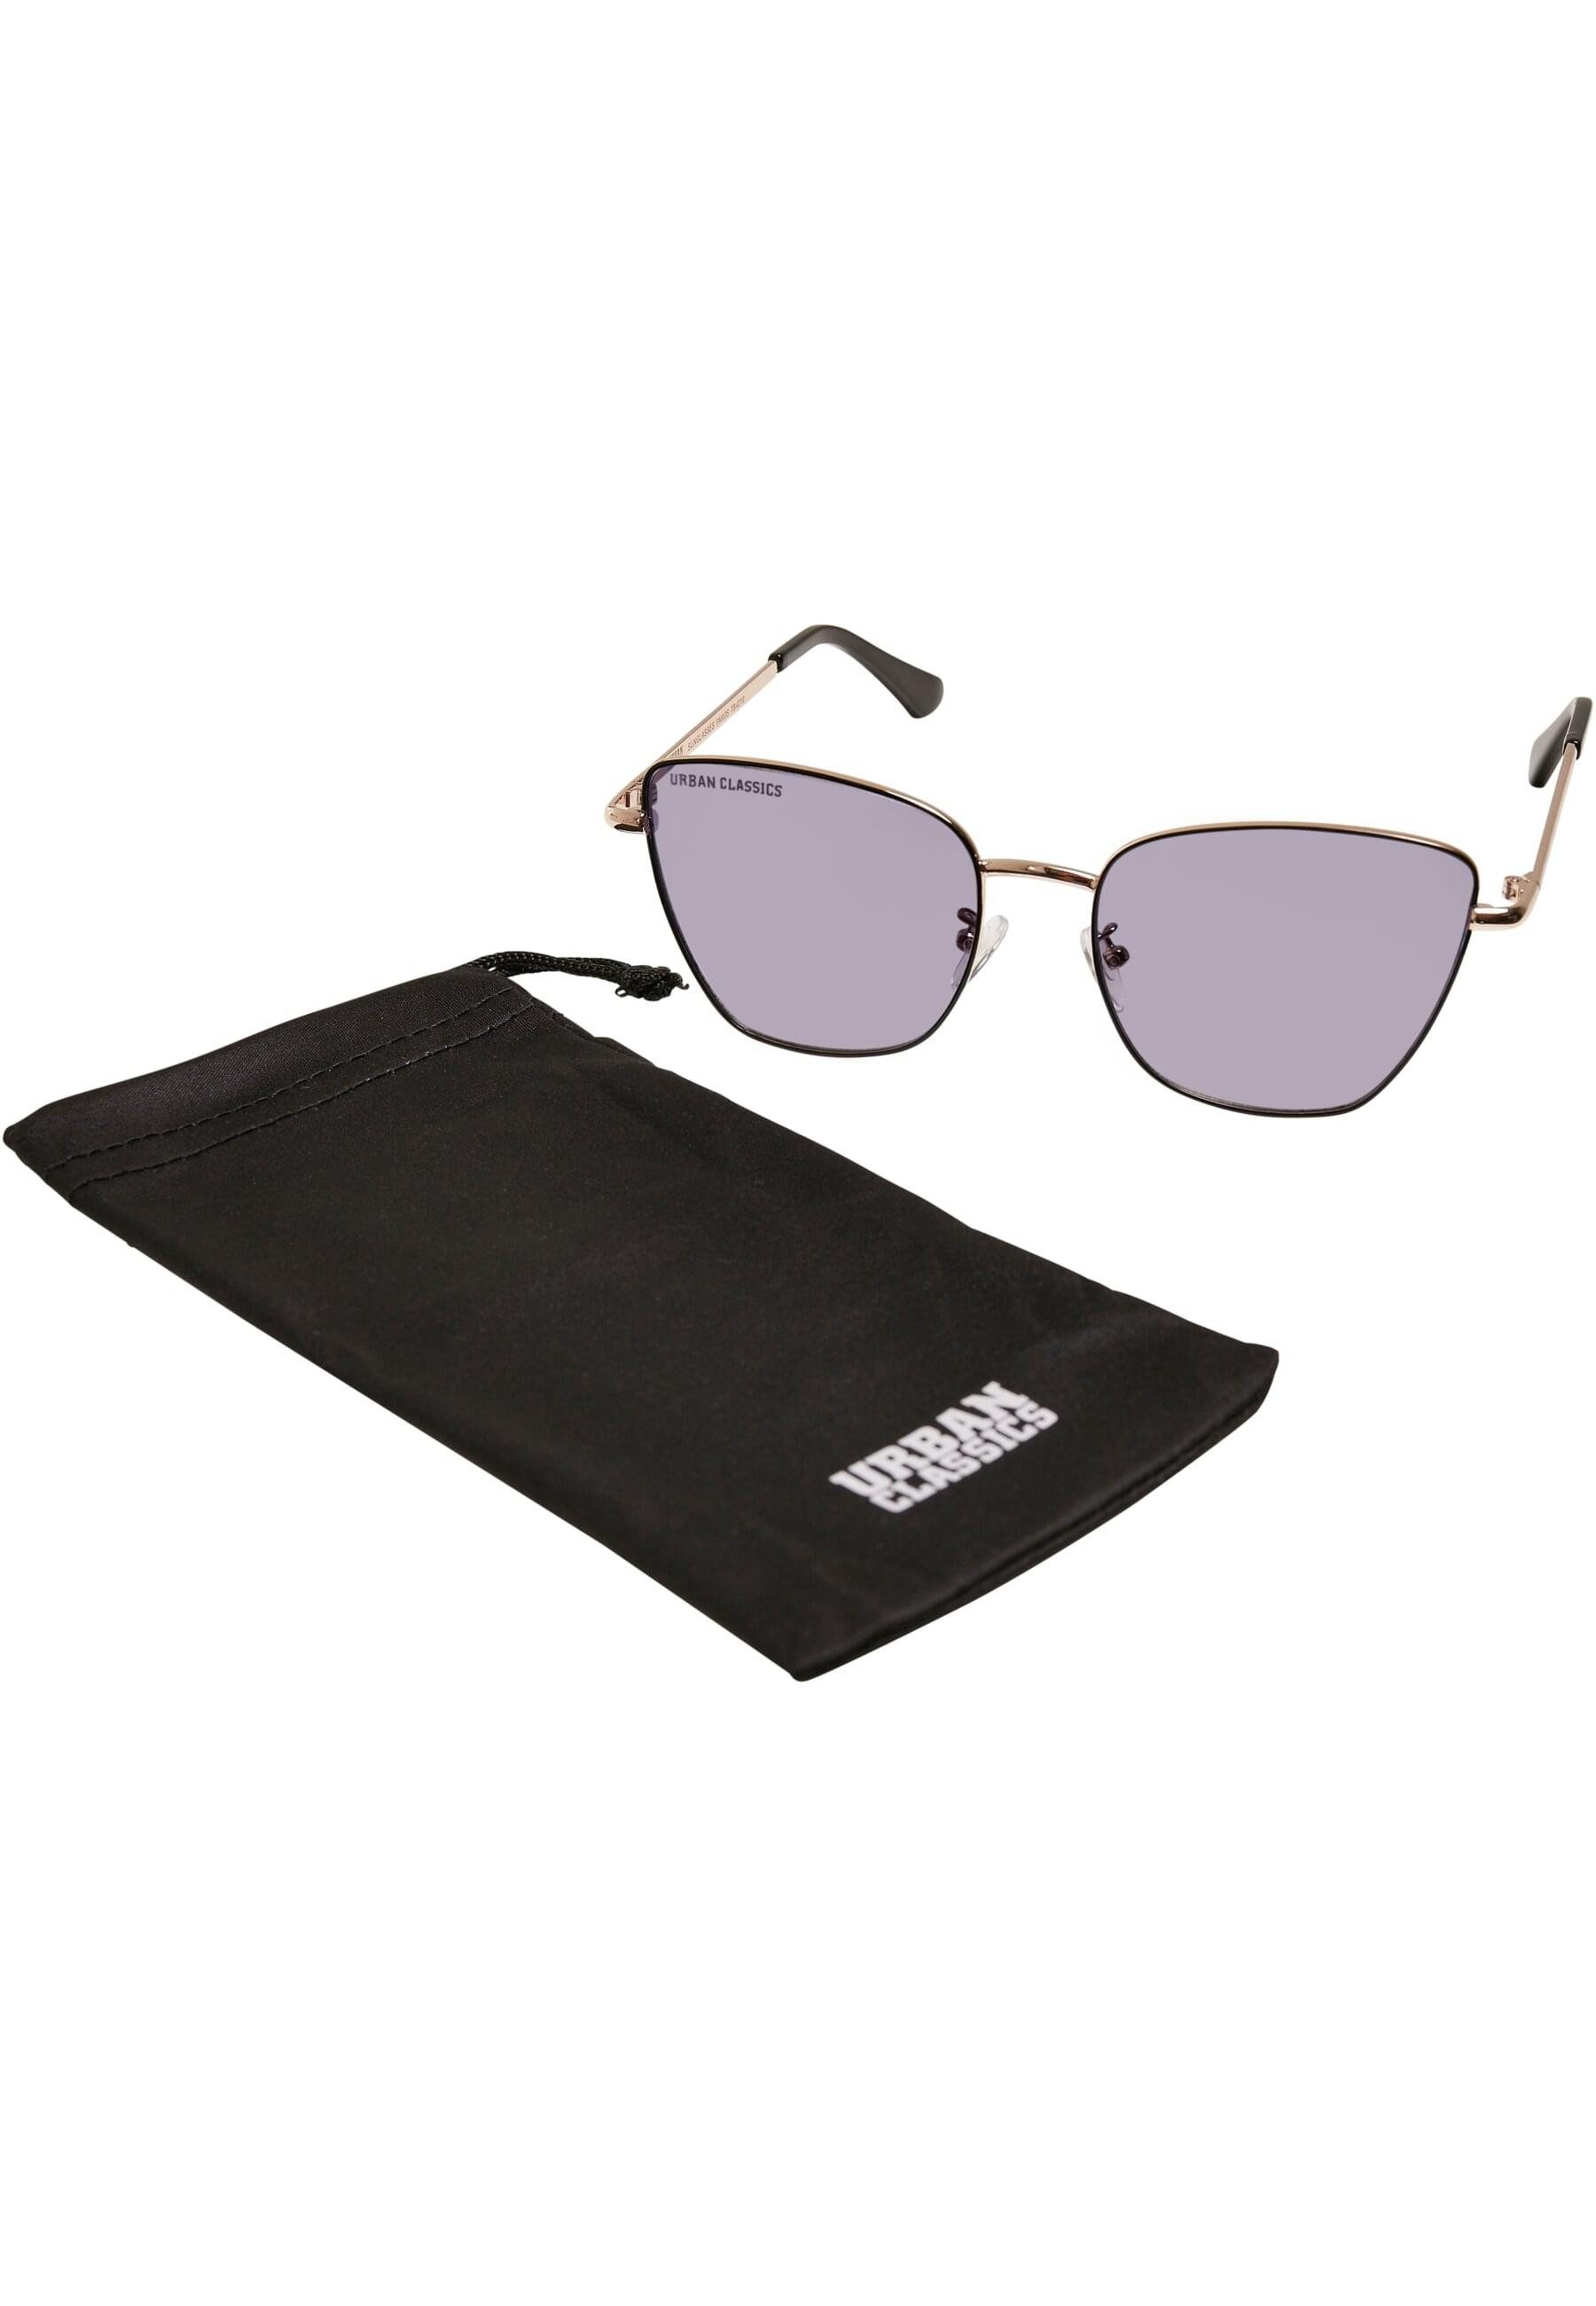 URBAN CLASSICS Sonnenbrille Urban Classics Unisex Sunglasses Paros